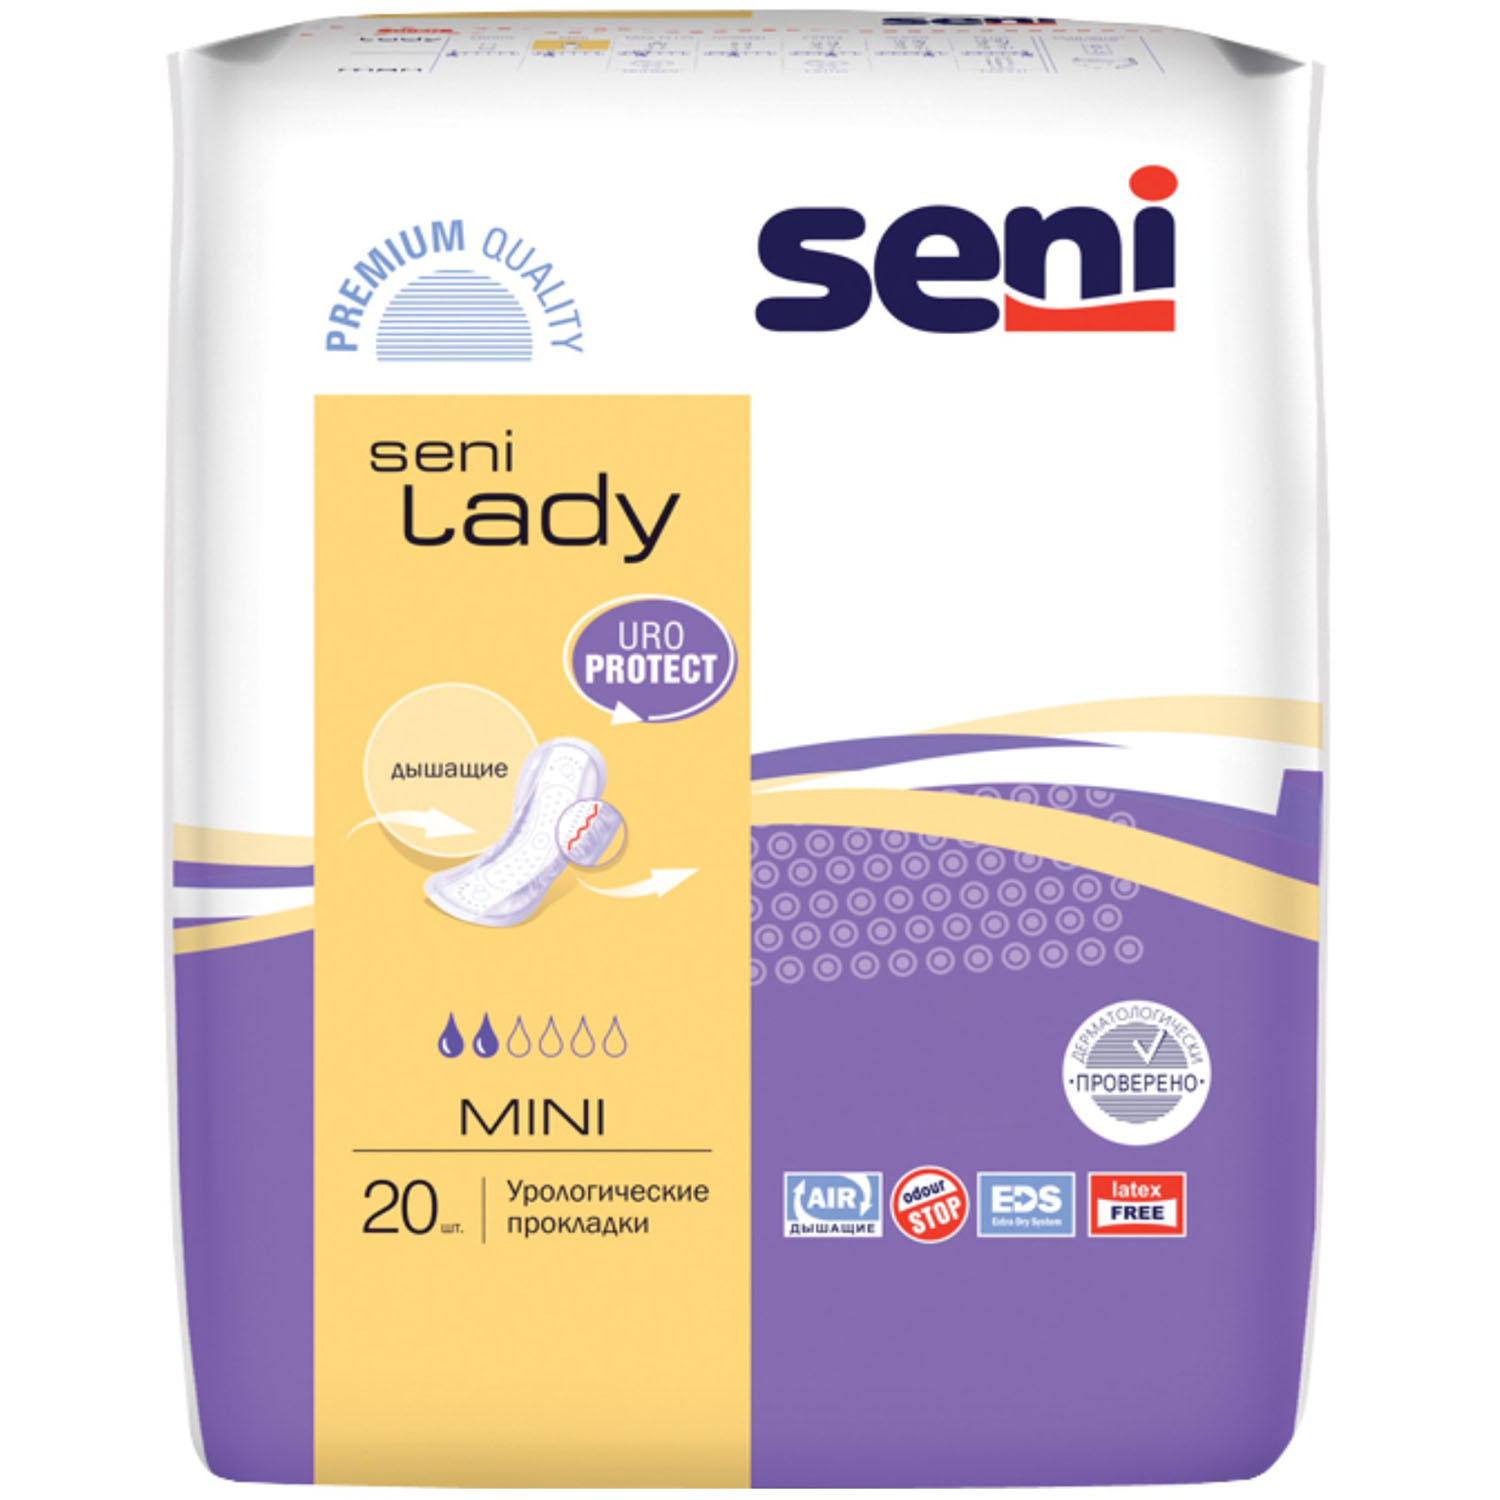 Seni Урологические прокладки для женщин Mini 9,5 х 22,5 см, 20 шт (Seni, Lady)